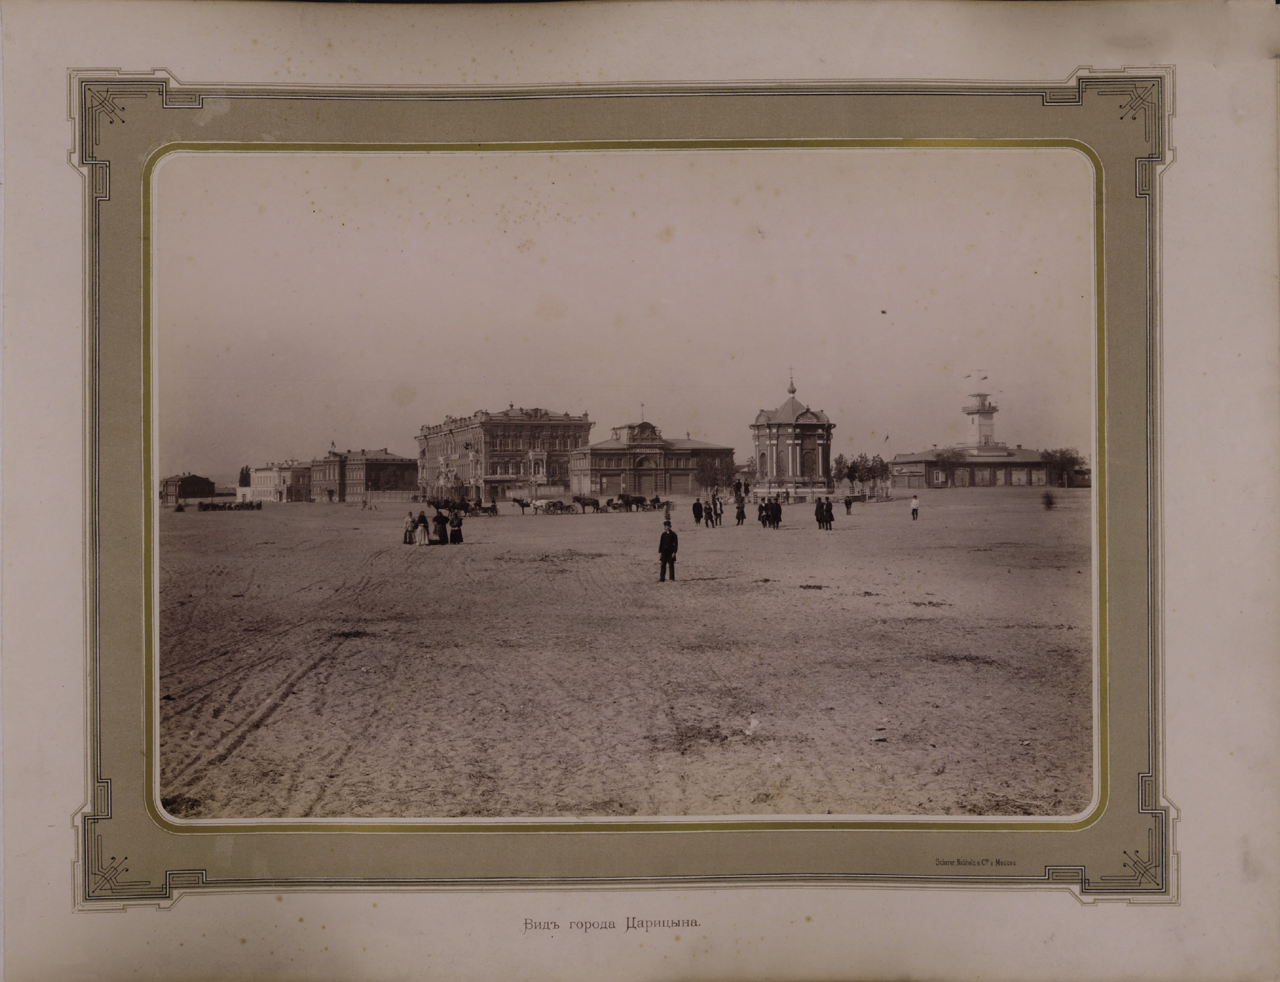 Вид города Царицына. Ателье «Шерер и Набгольц». 1886 г.